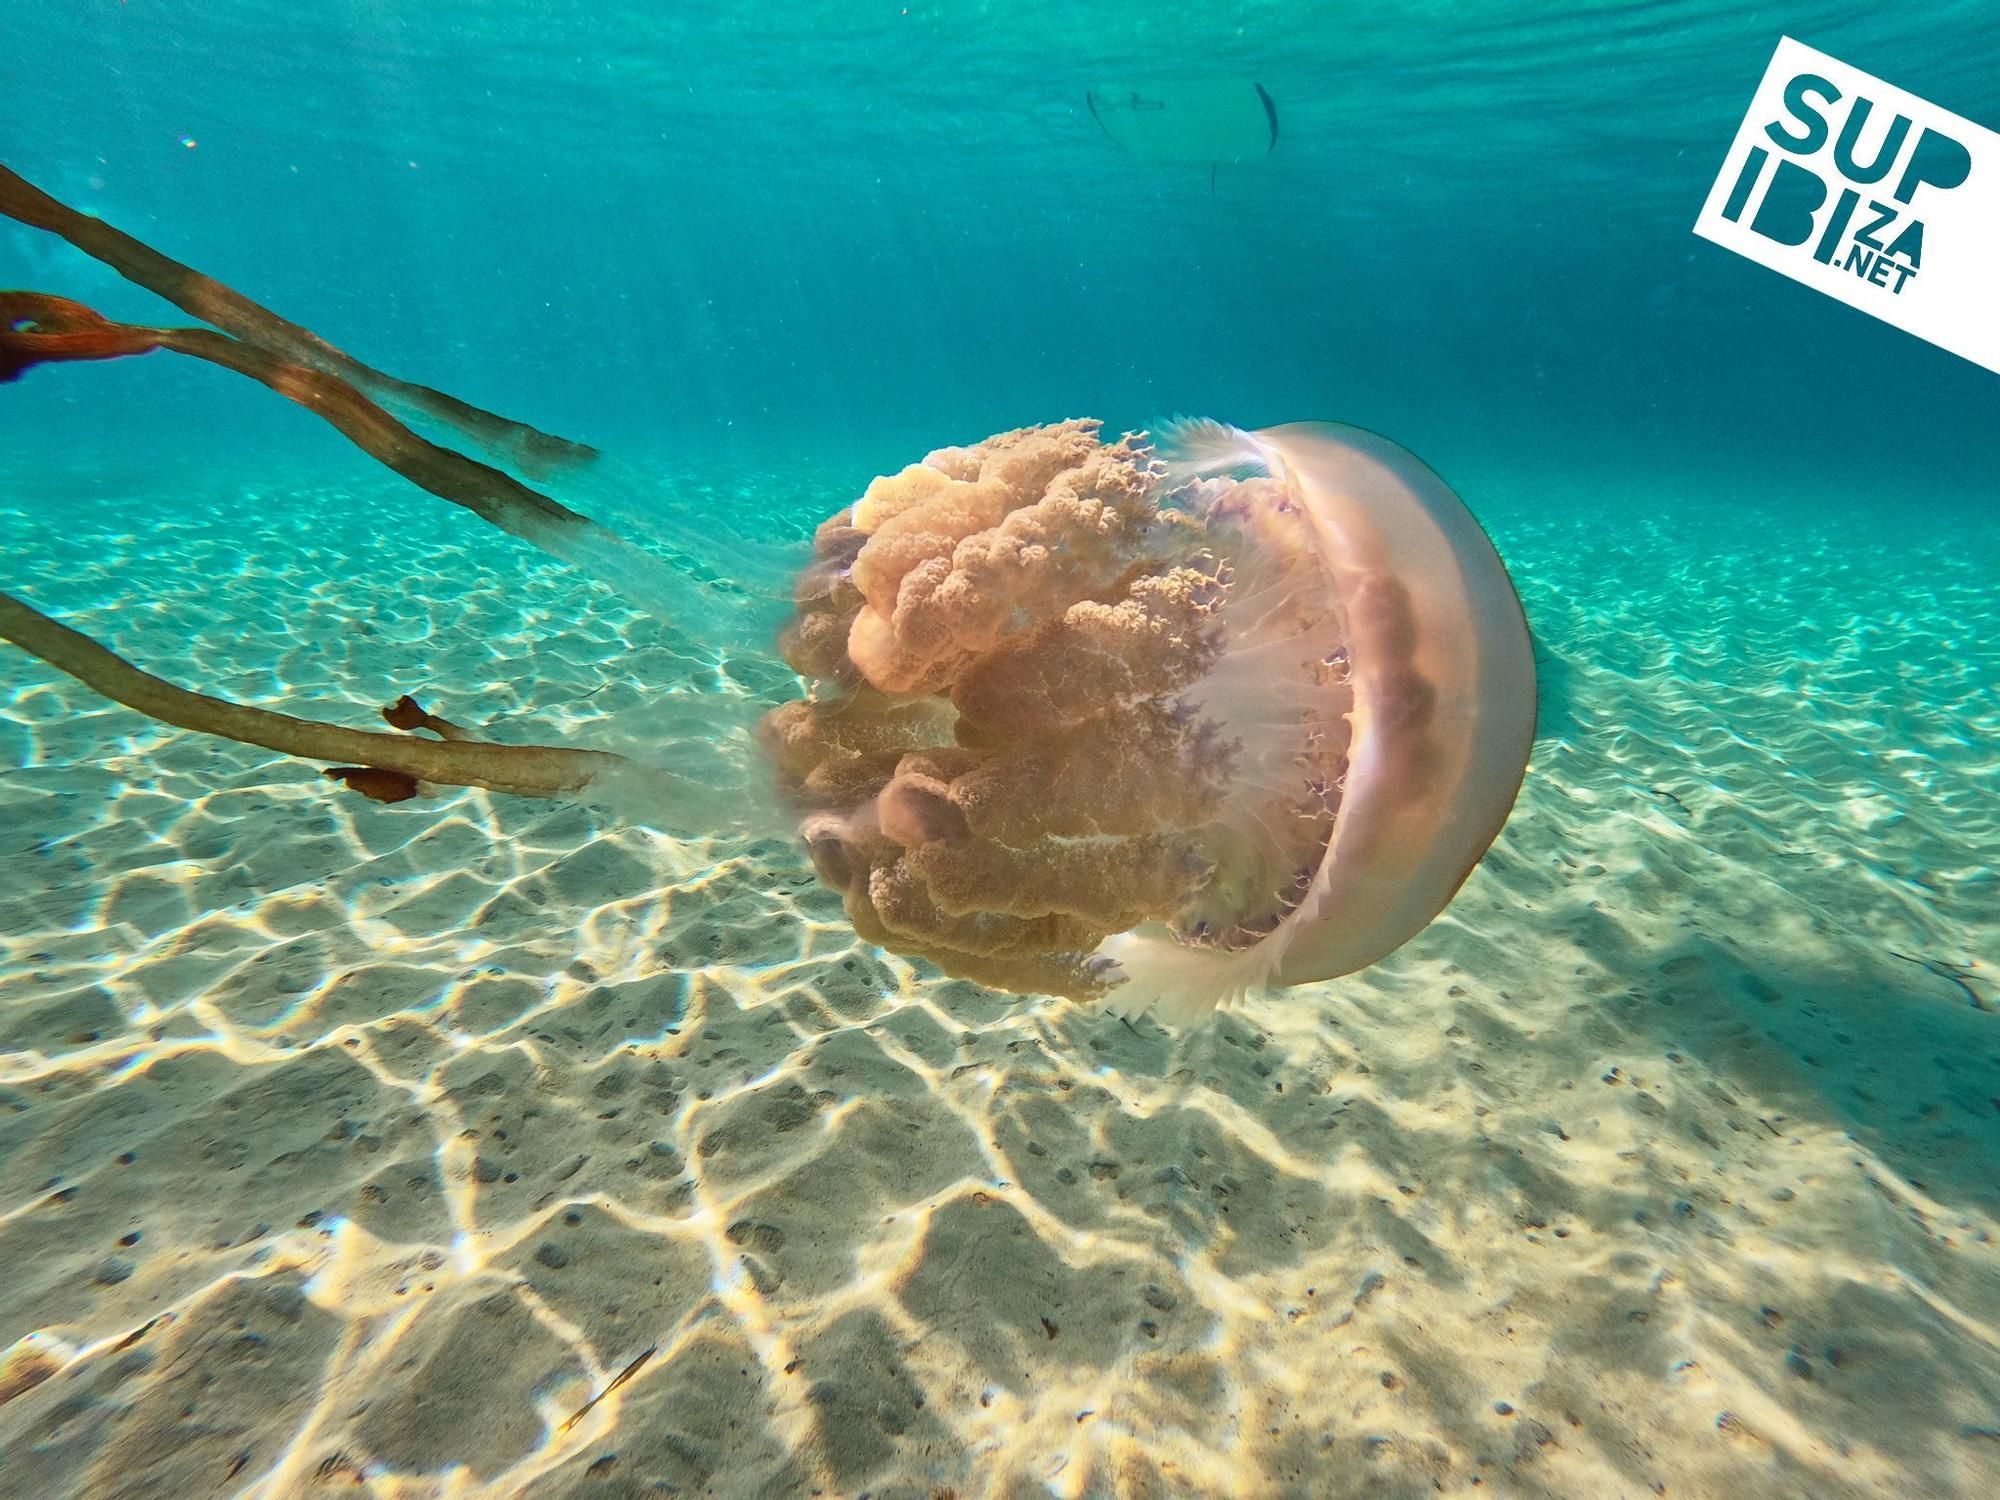 Tauchen mit Qualle - Bilder von Ibiza sorgen für Aufsehen